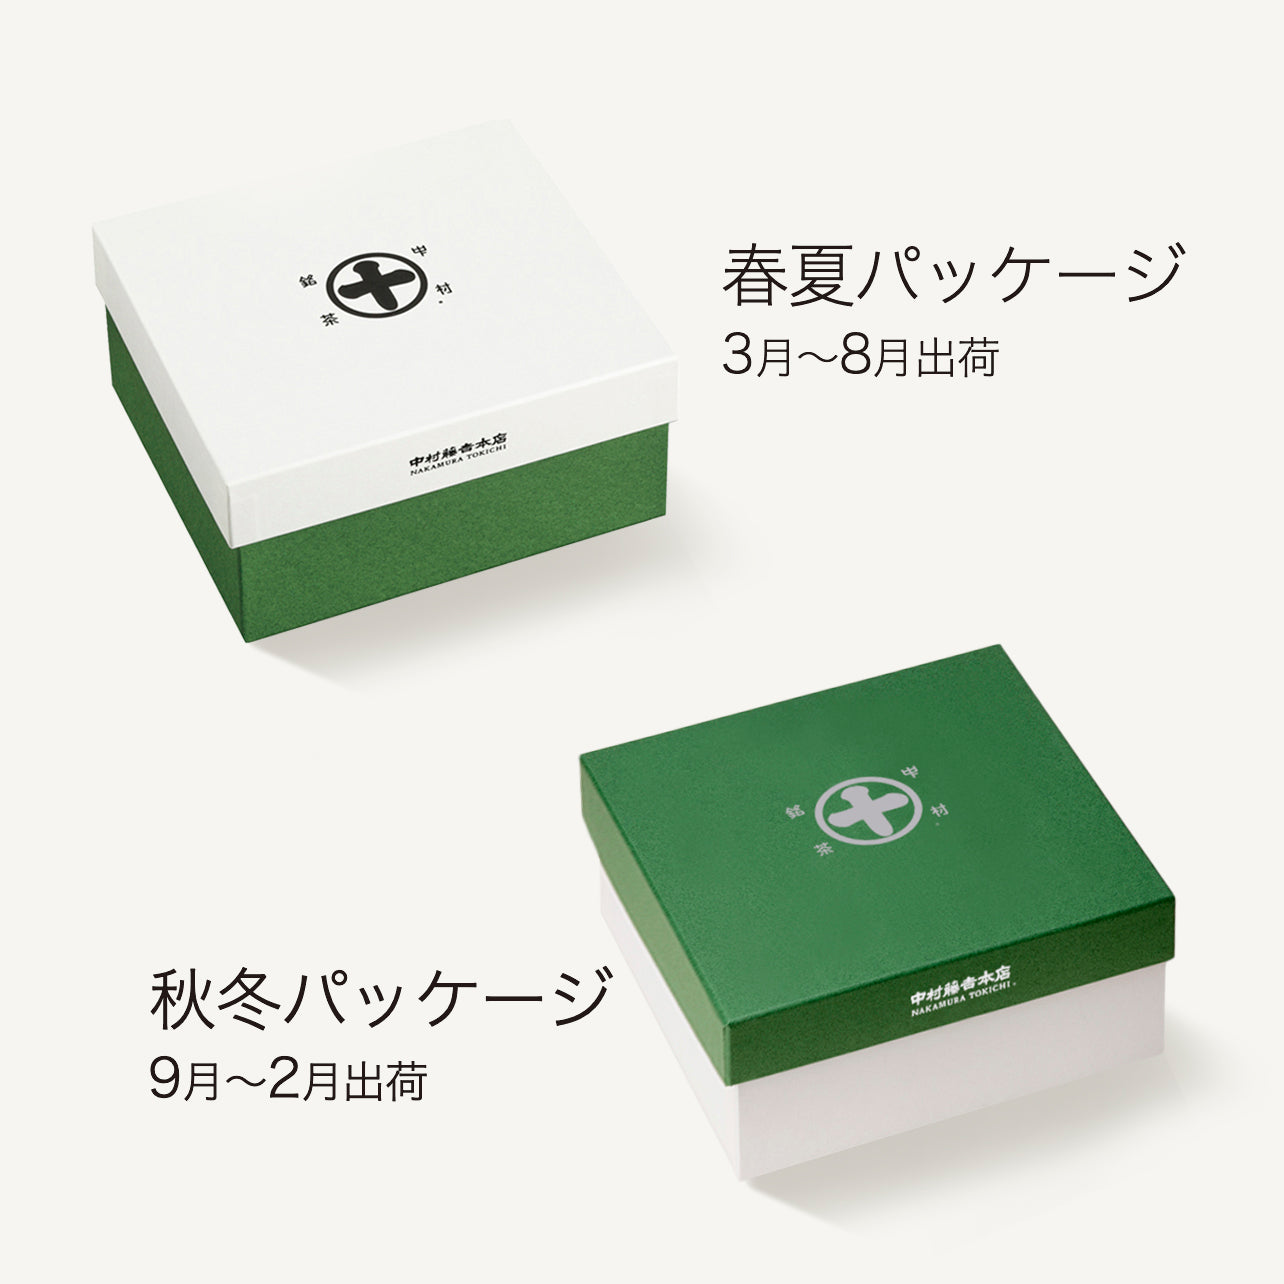 Green Tea Financier Assortment [Matcha×2・Hojicha×2]